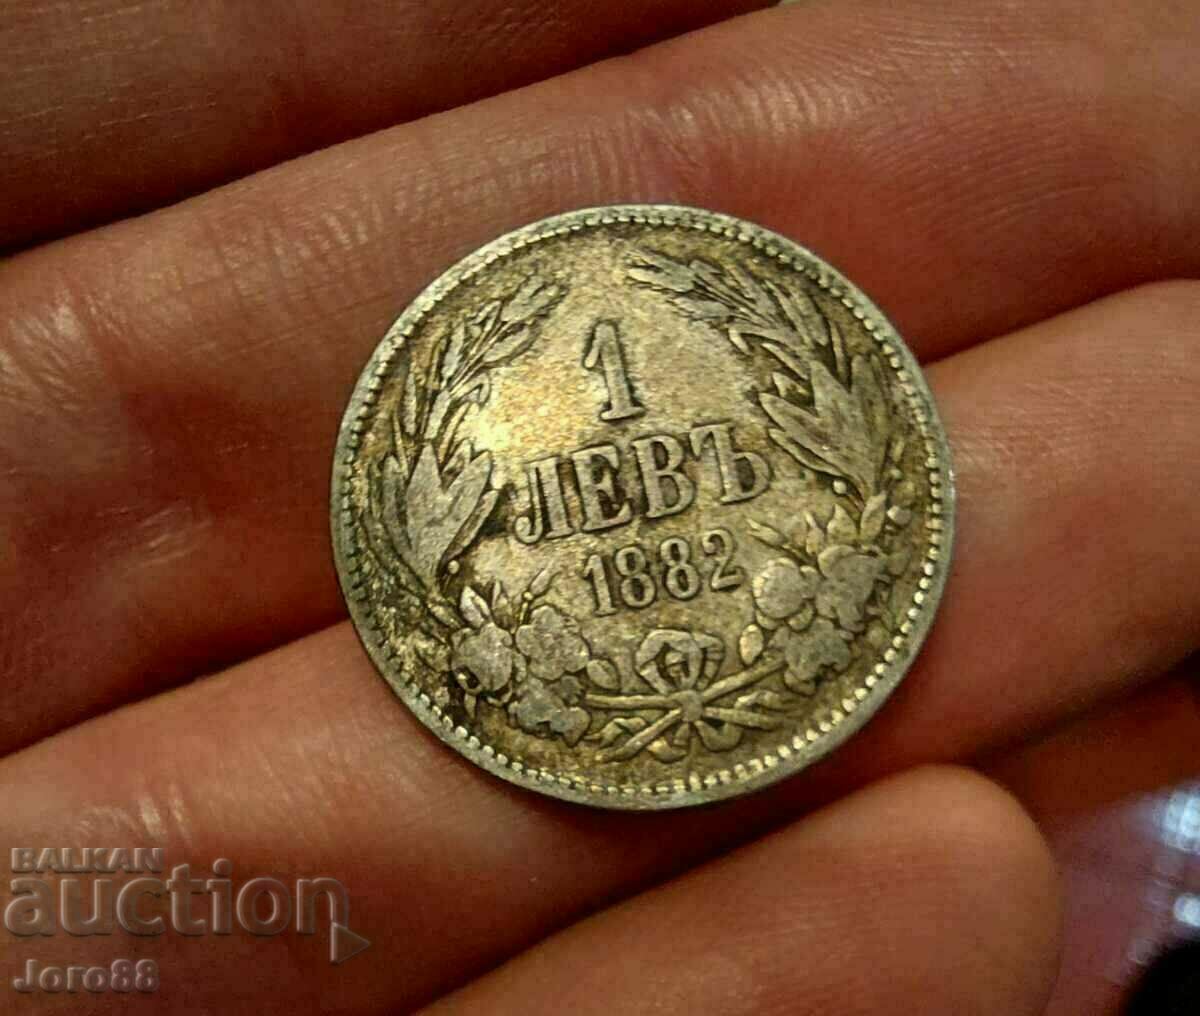 1 lev 1882 Silver coin Principality of Bulgaria